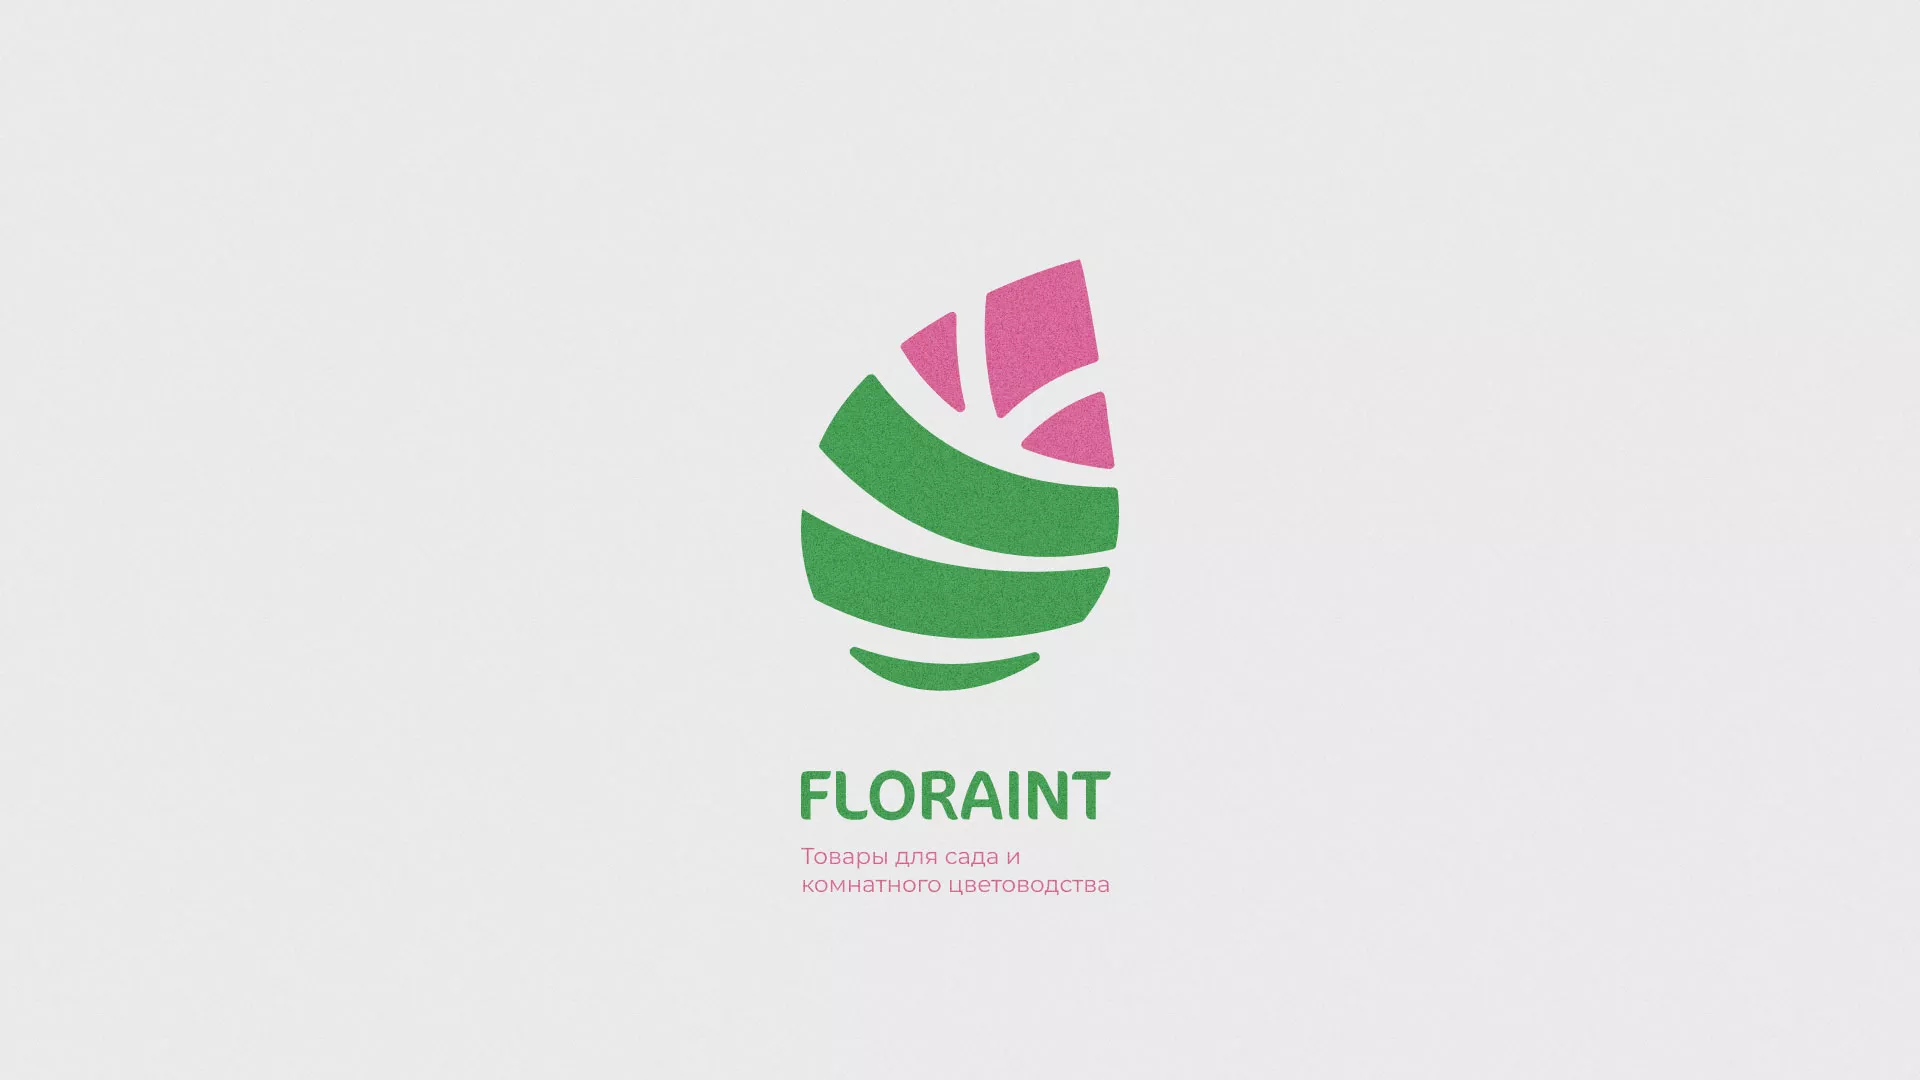 Разработка оформления профиля Instagram для магазина «Floraint» в Шахтёрске